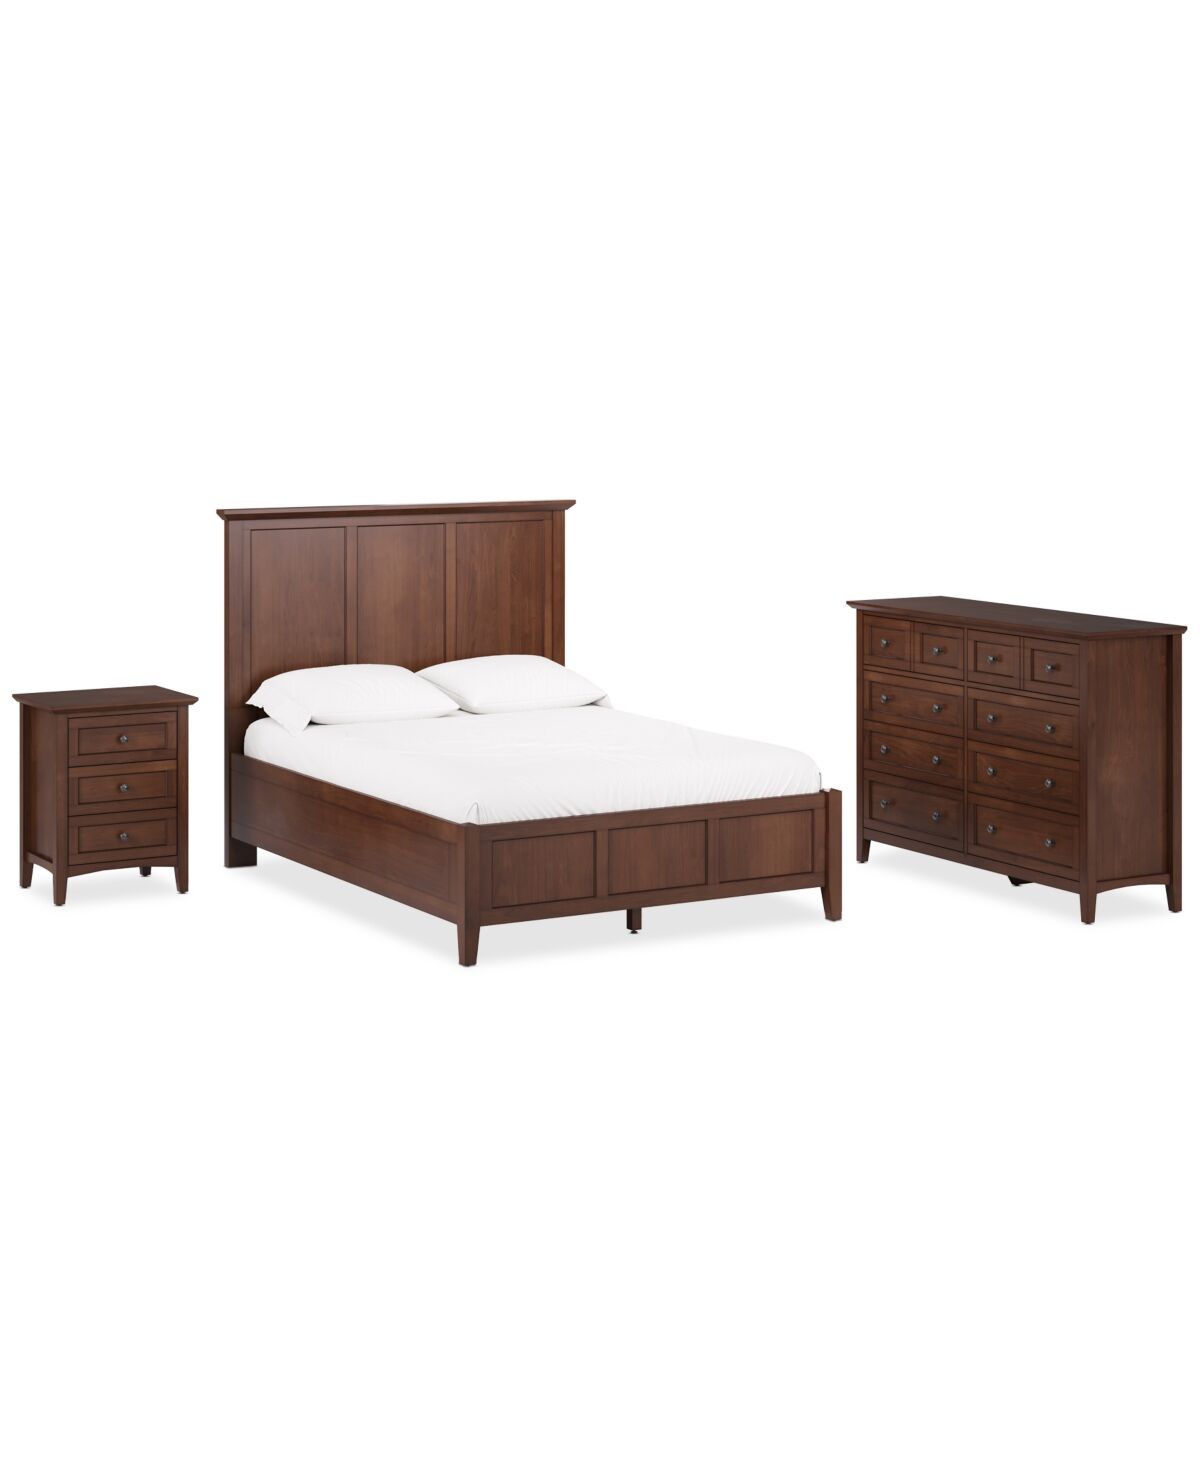 Furniture Hedworth Queen Bed 3pc Set (Queen Bed + Dresser + Nightstand) - Brown